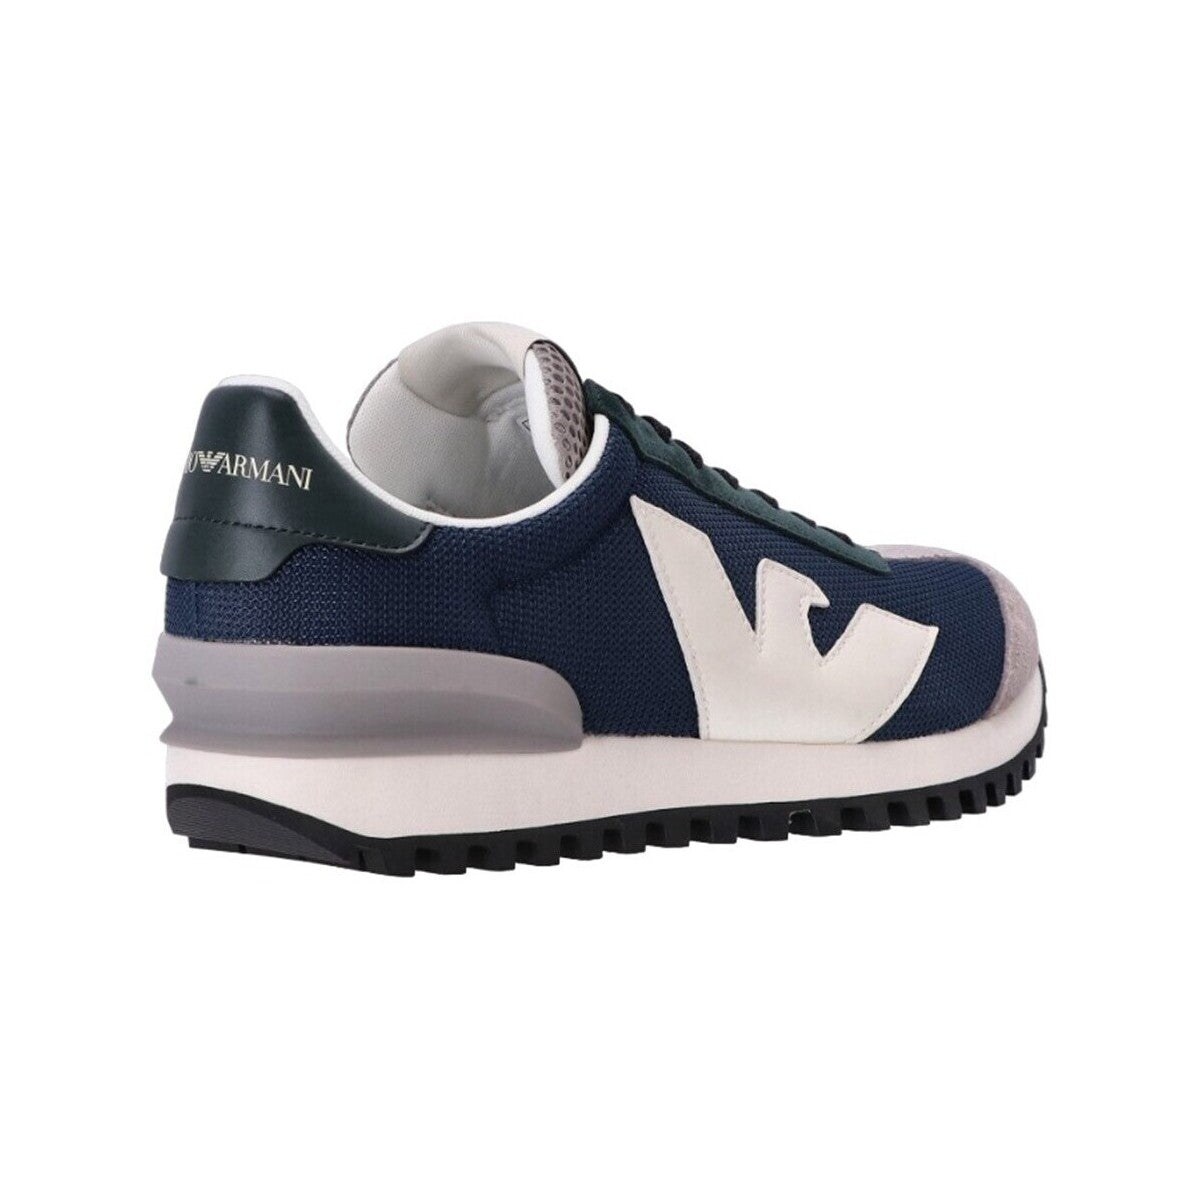 Sneakers Emporio Armani Uomo Taglia 42 Blu/Rosso - mem39